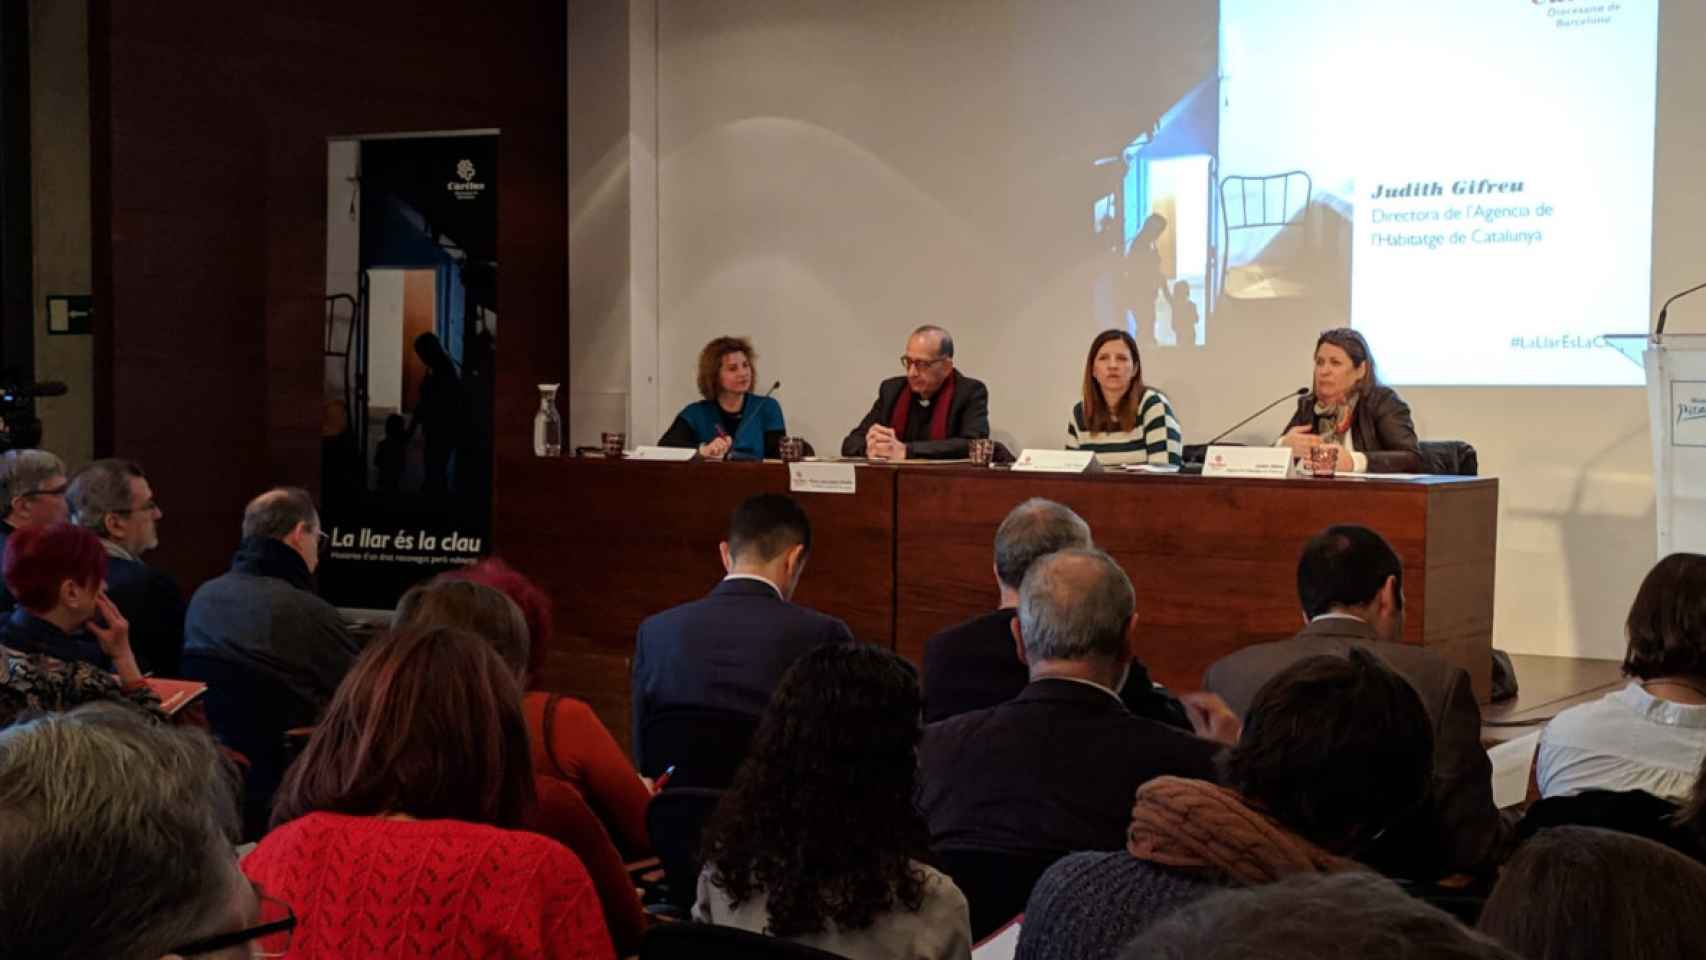 El arzobispo Juan José Omella en la presentación del acto 'La llar és la clau' donde ha defendido la vivienda social en Barcelona / CÀRITAS BARCELONA